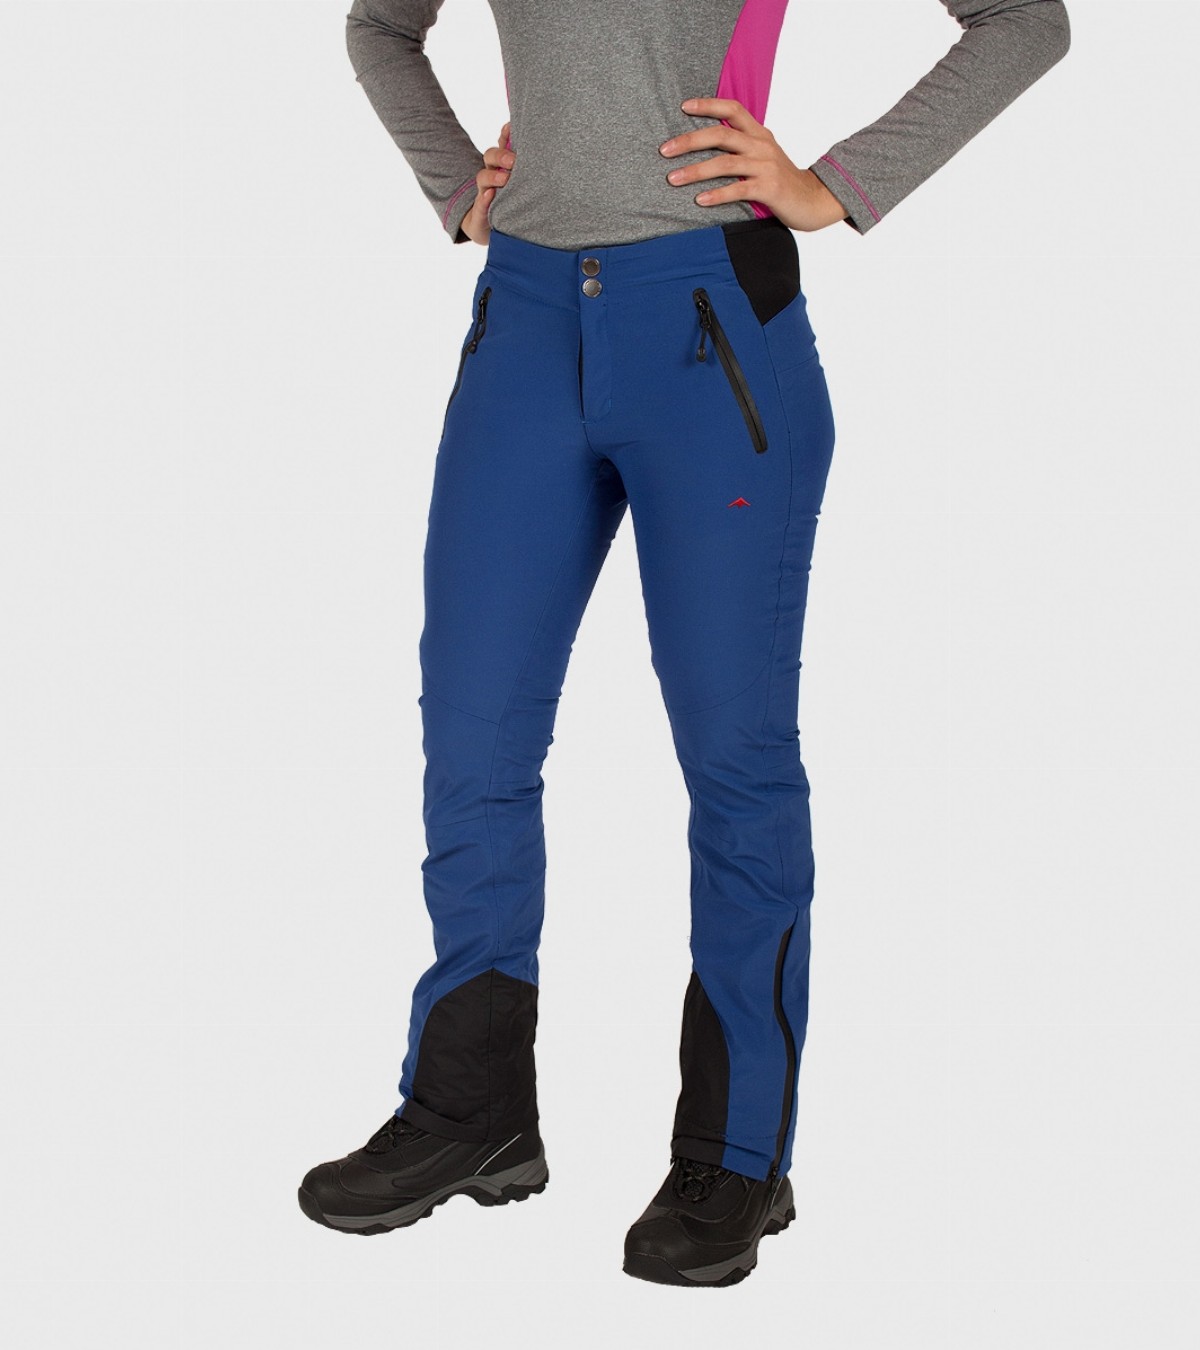 pantalones ski mujer ajustados